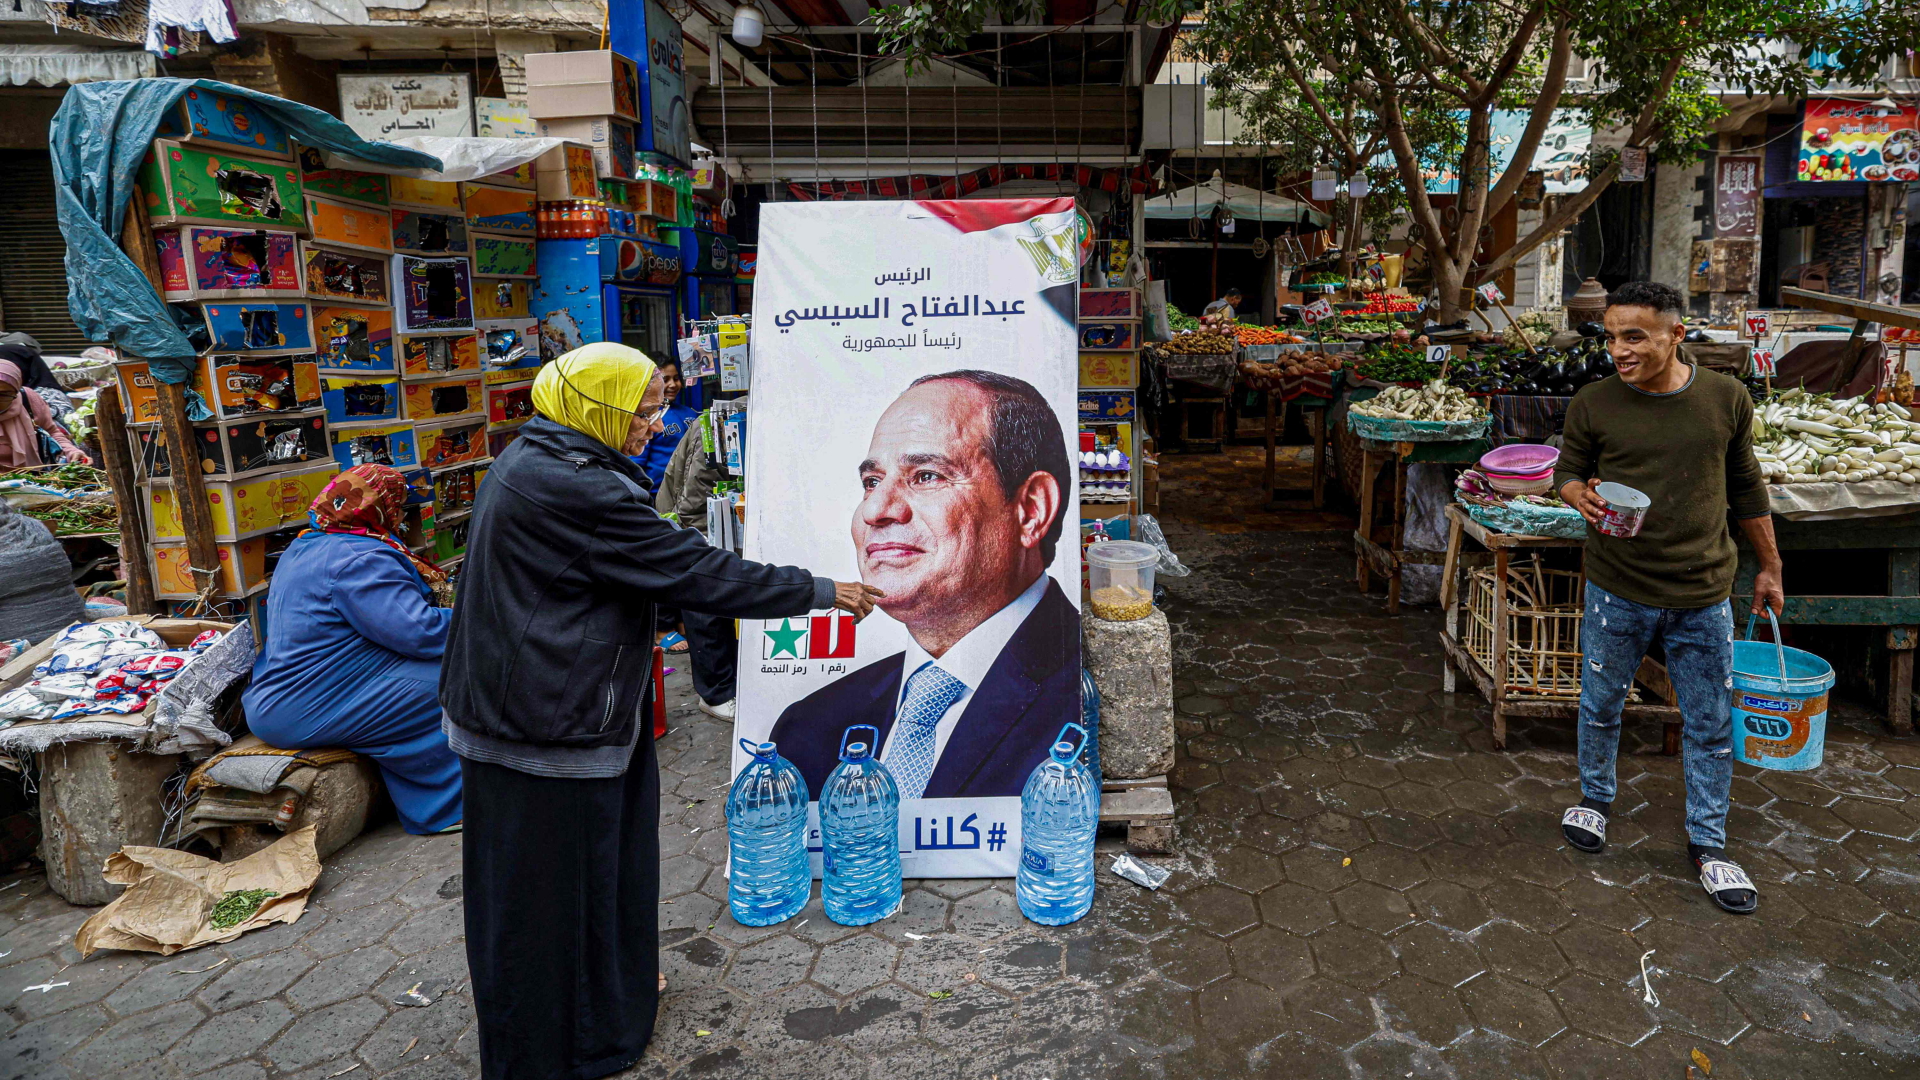 Ein Wahlplakat von Ägyptens Präsident Abdel Fattah al-Sisi ist auf einem Markt in Kairo zu sehen